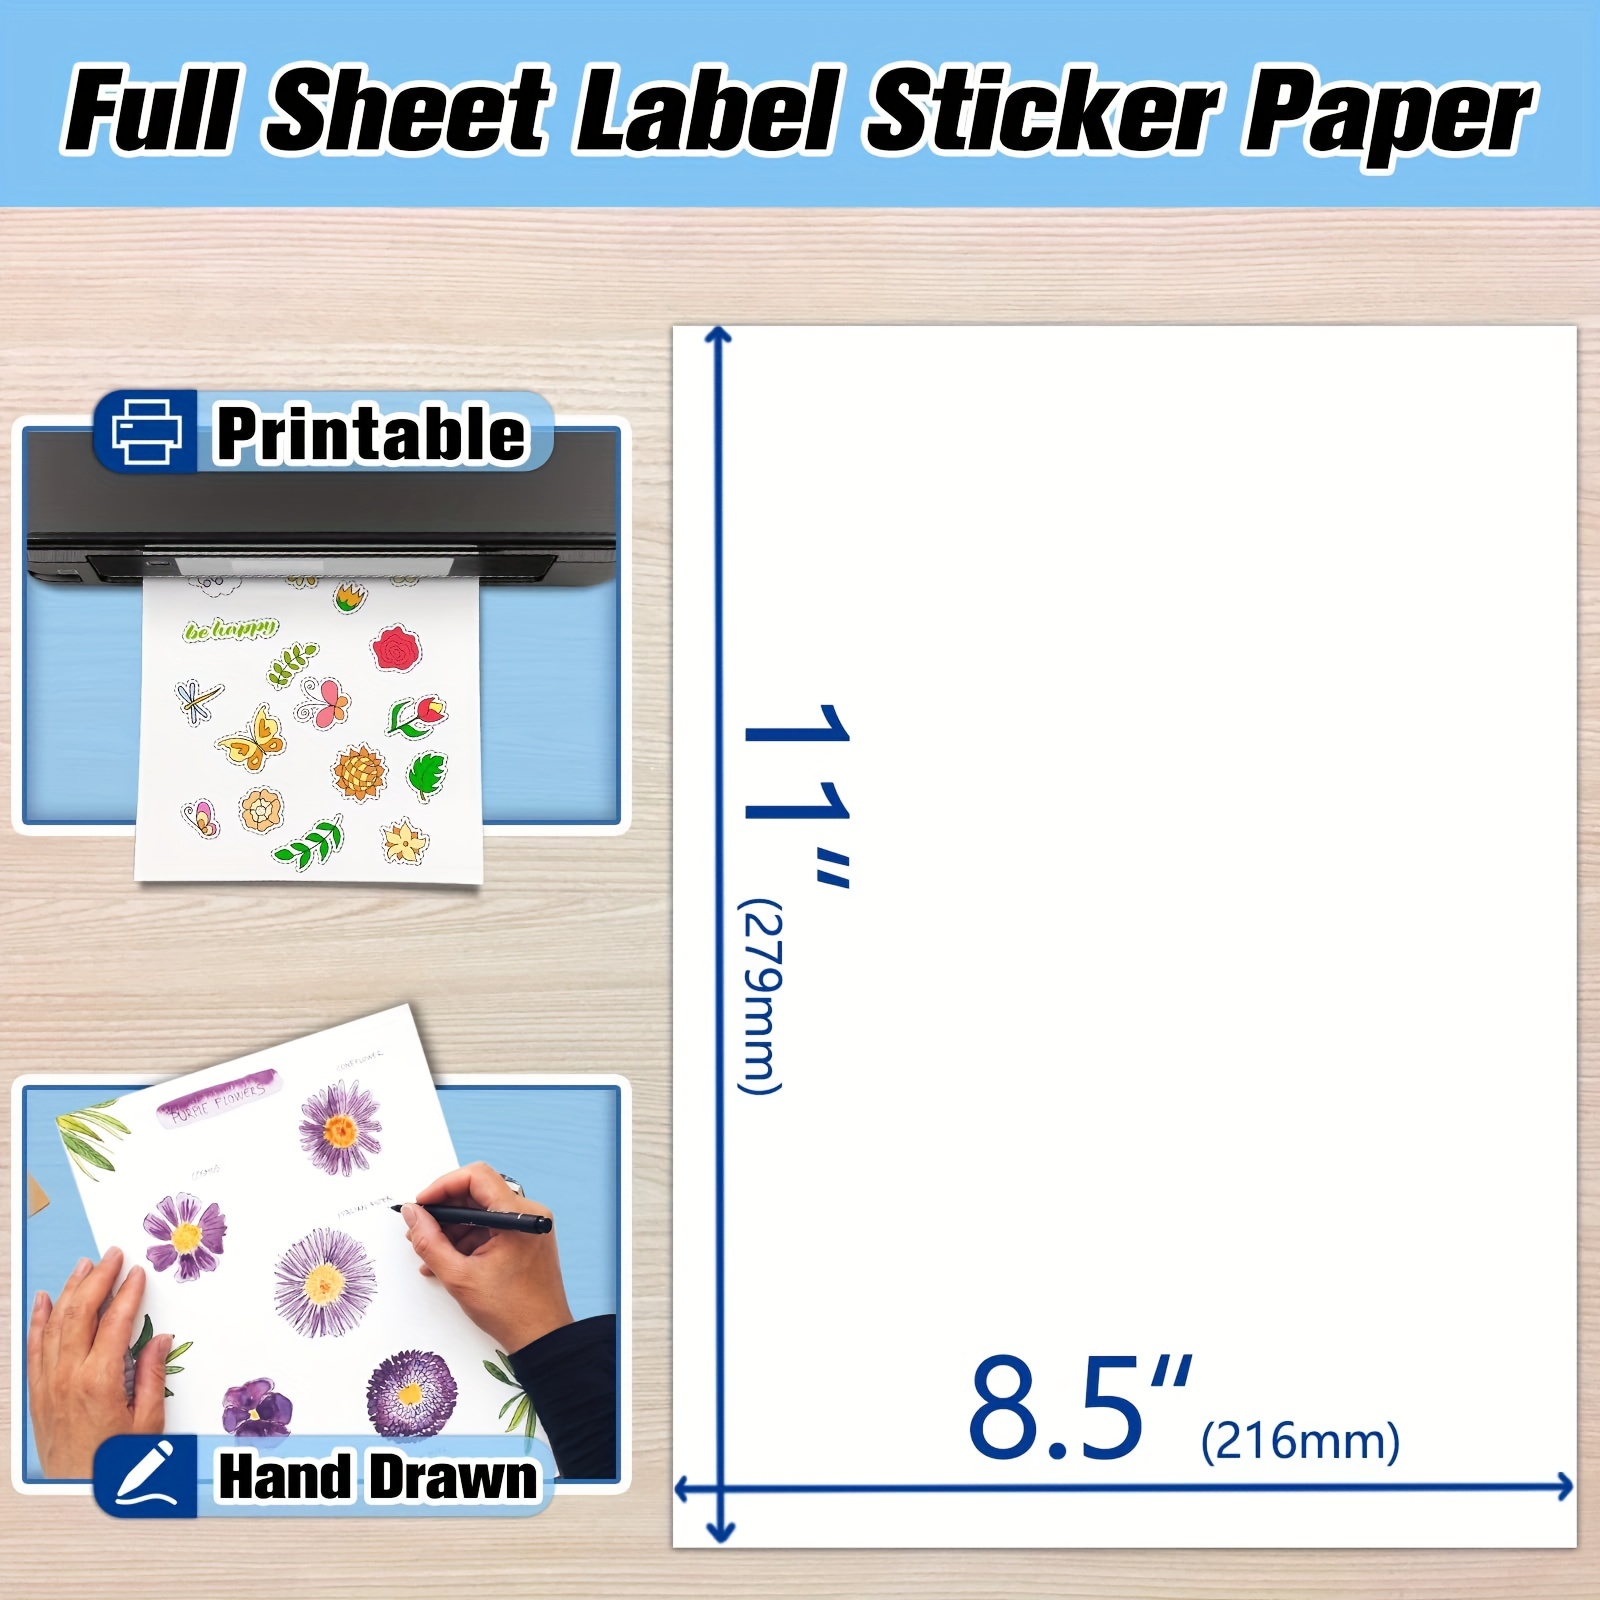  Koala Printable Vinyl Sticker Paper for Inkjet